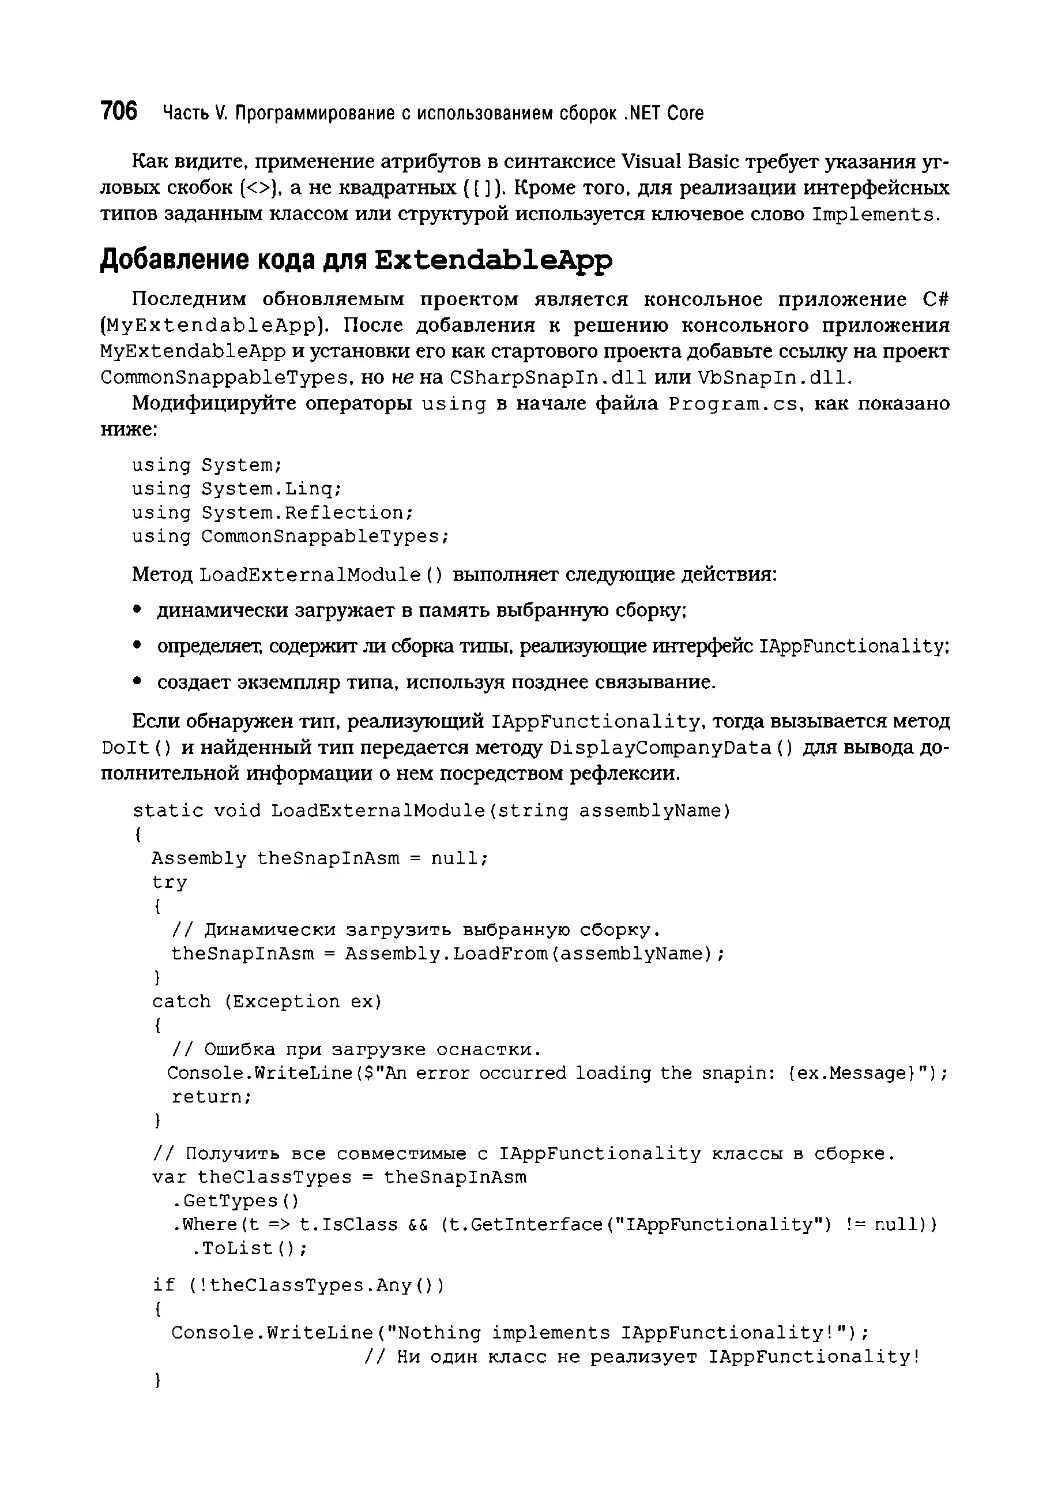 Добавление кода для ExtendableApp